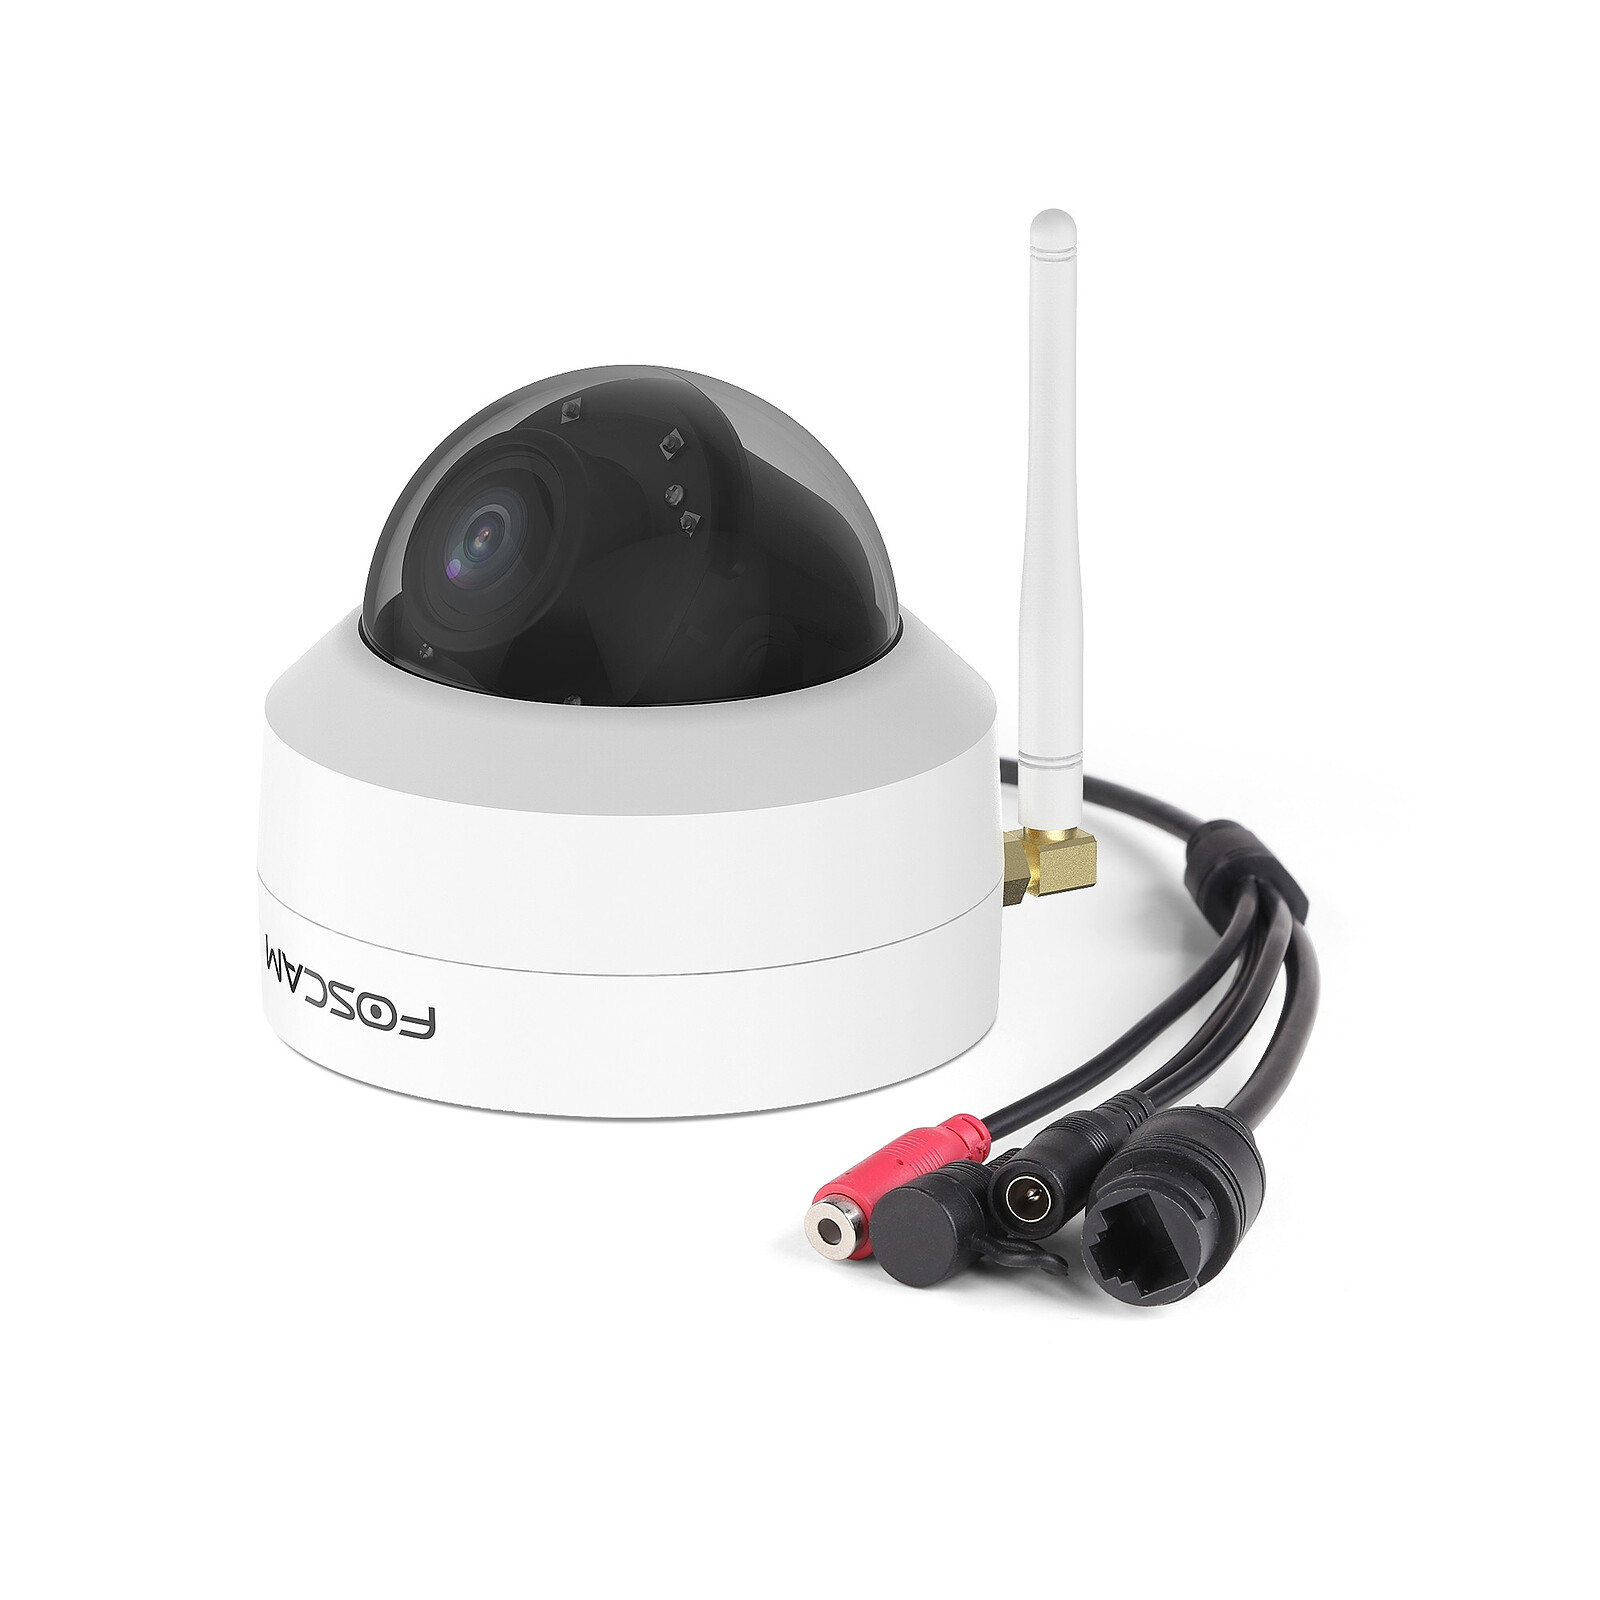 Foscam - Caméra IP Wifi extérieure 4MP - G4C - Caméra de surveillance - LDLC